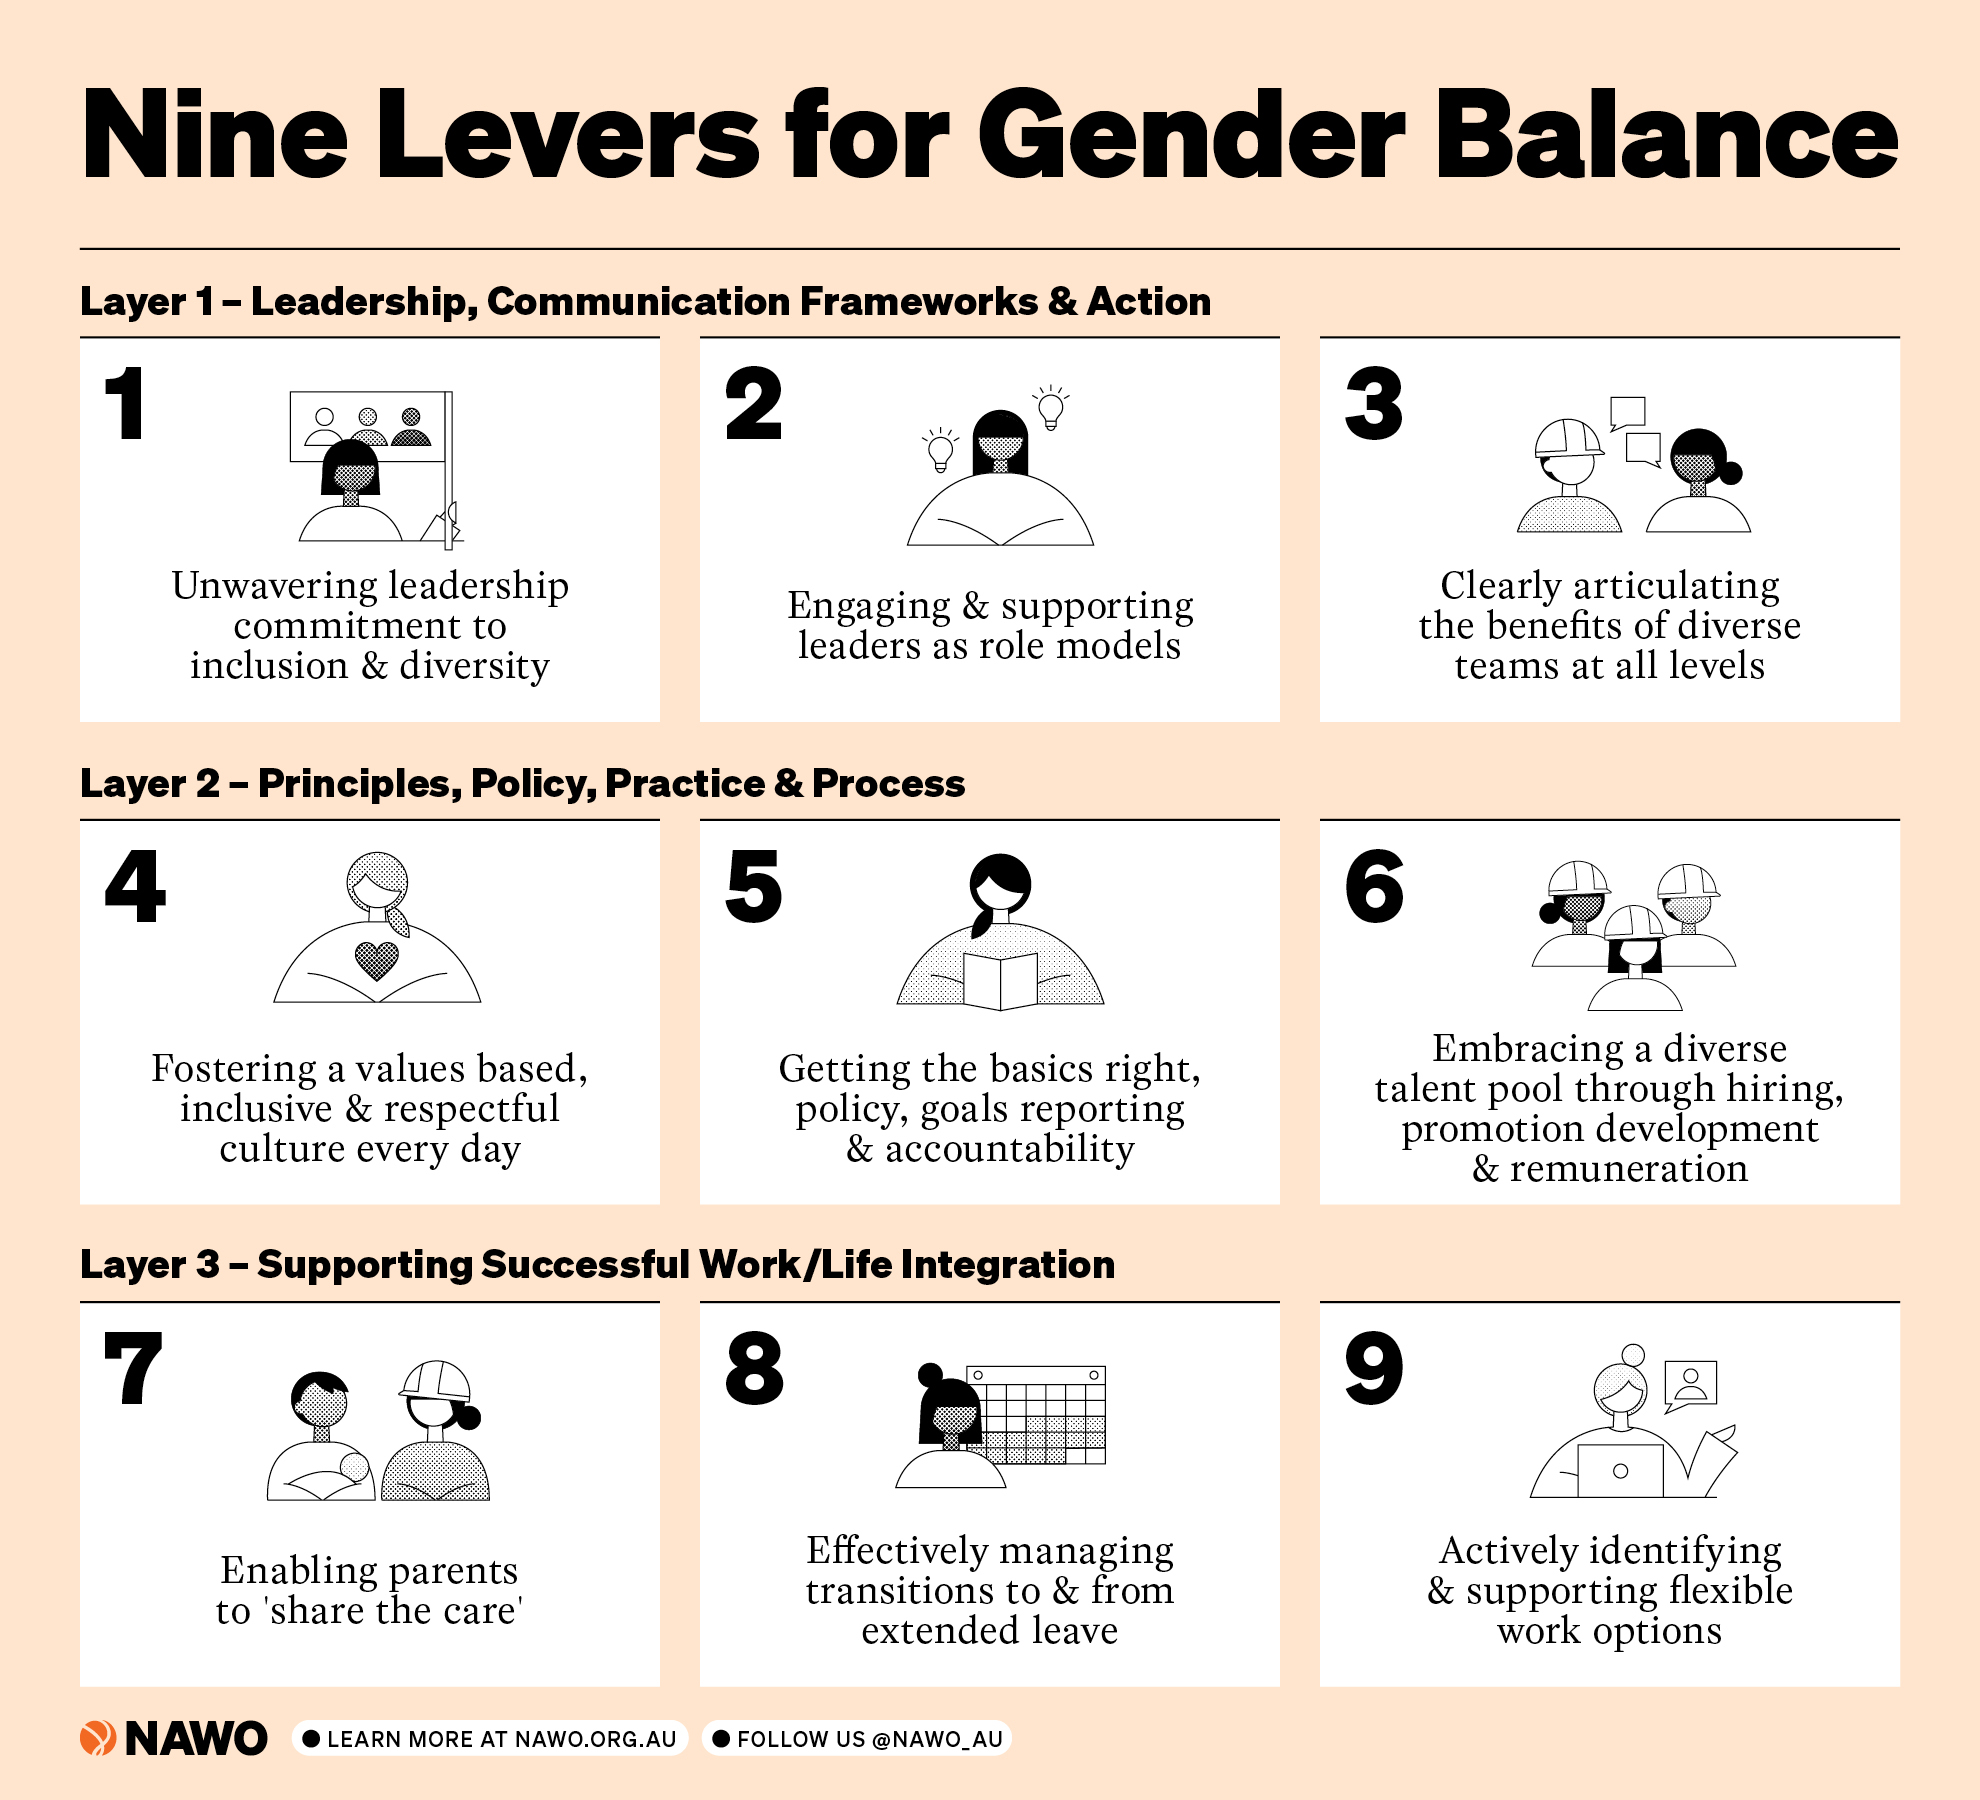 Nine levers for gender balance